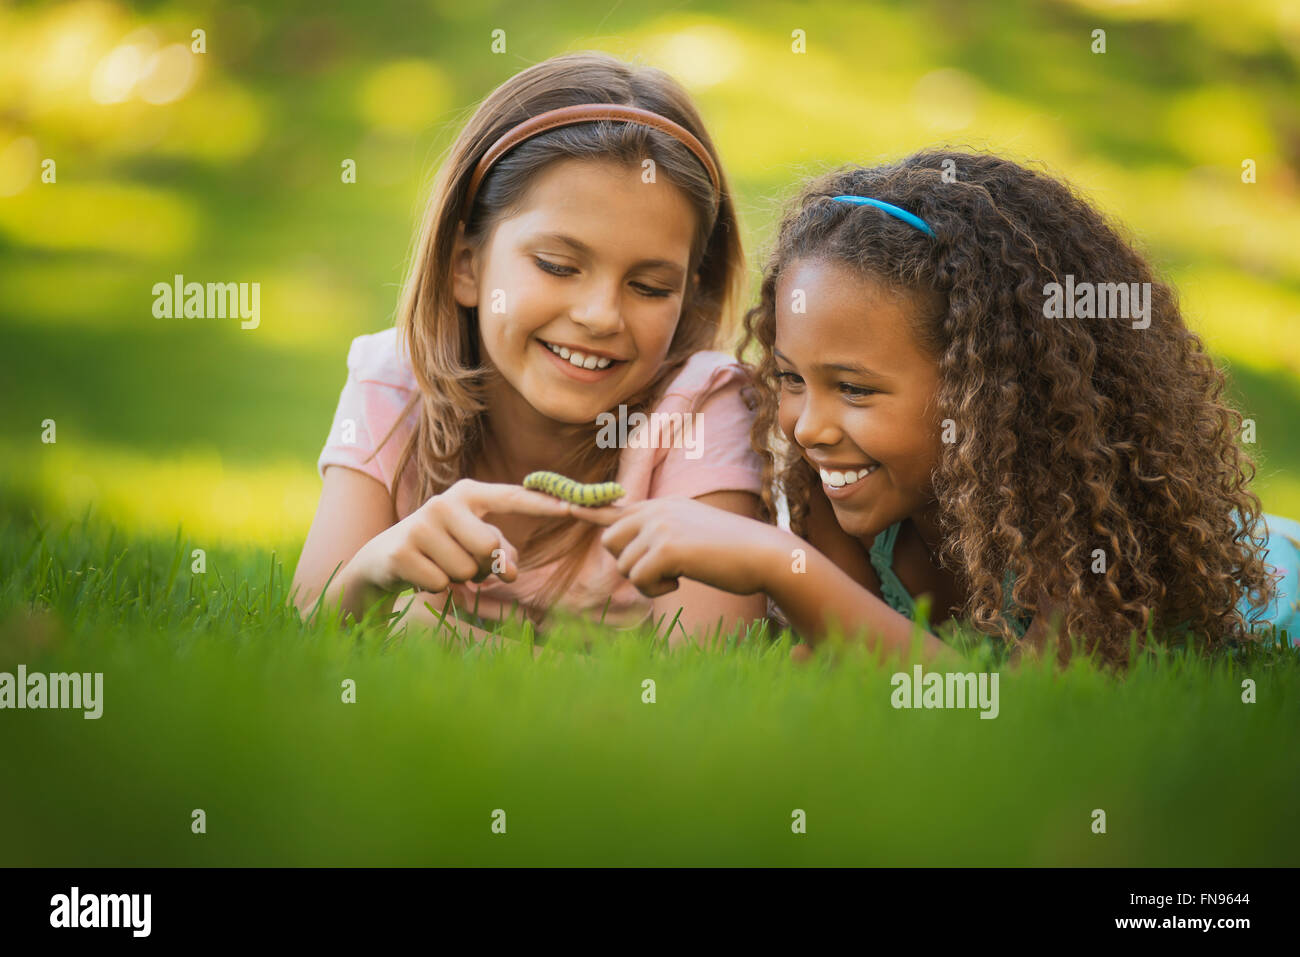 Due ragazze sdraiati sull'erba, una holding di un bruco verde sul suo dito. Foto Stock